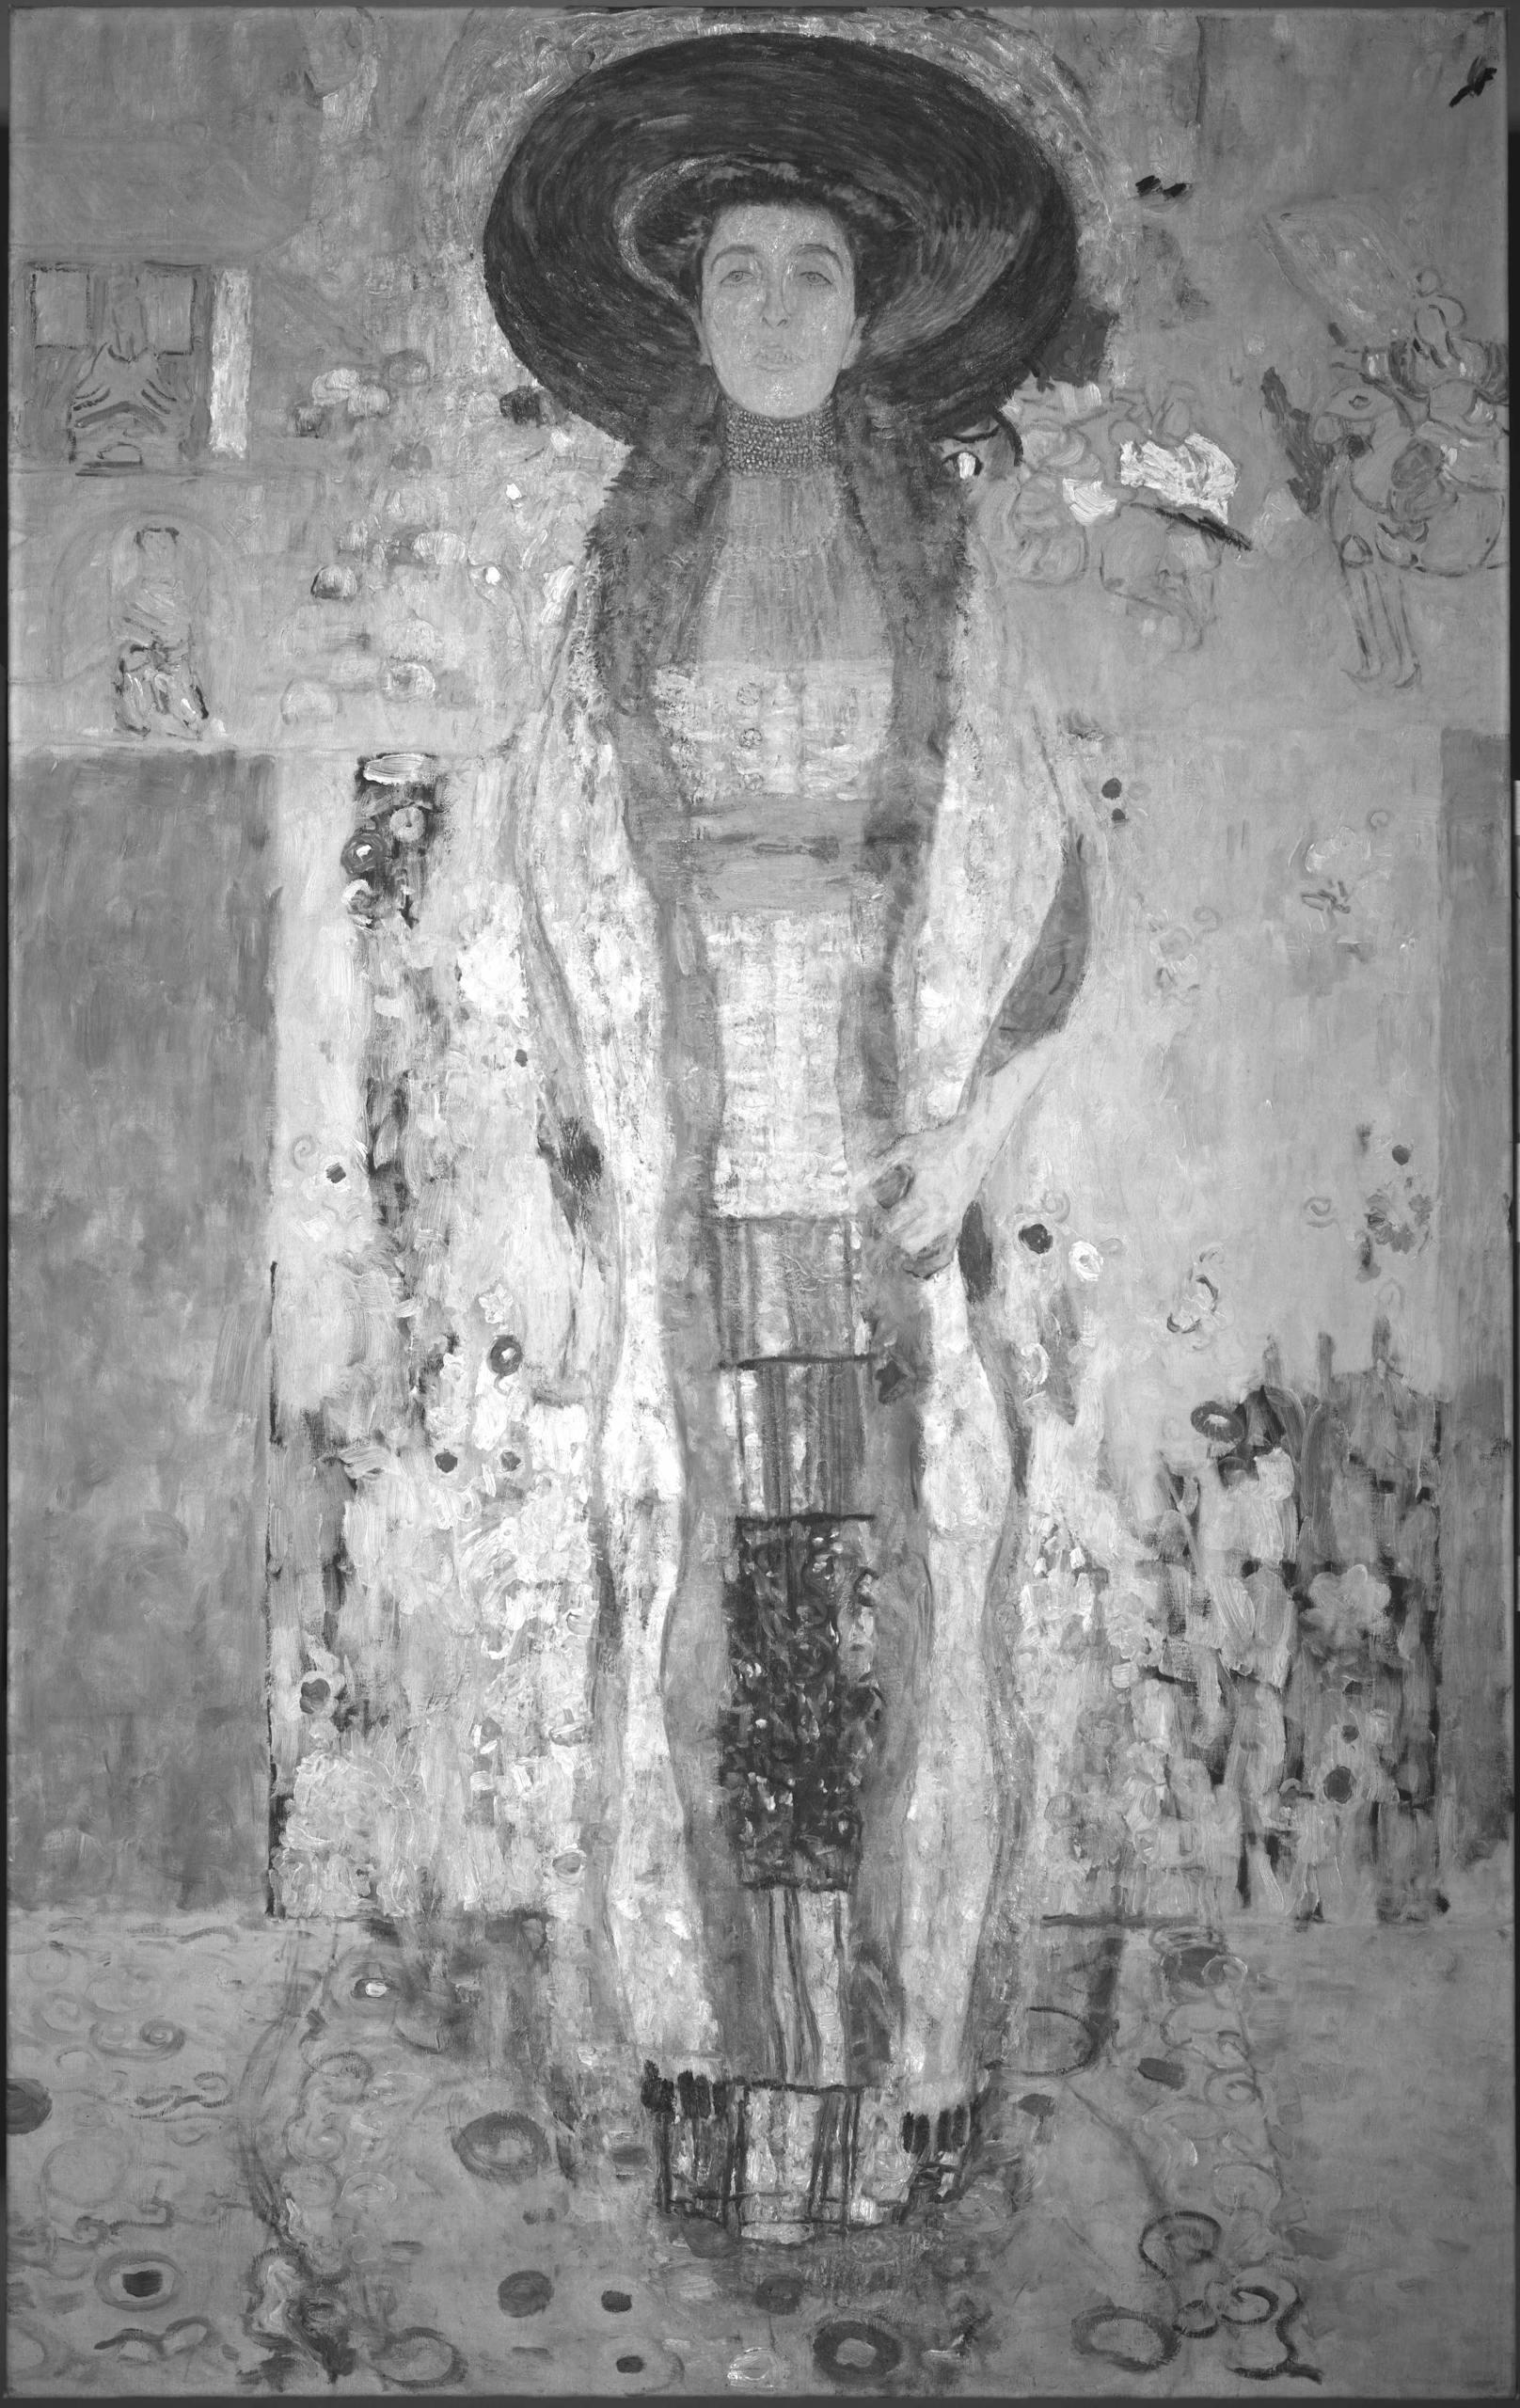 Die Infrarotreflektografie zeigt, wie Klimt die Feinheiten des Bildes umrissen hat.